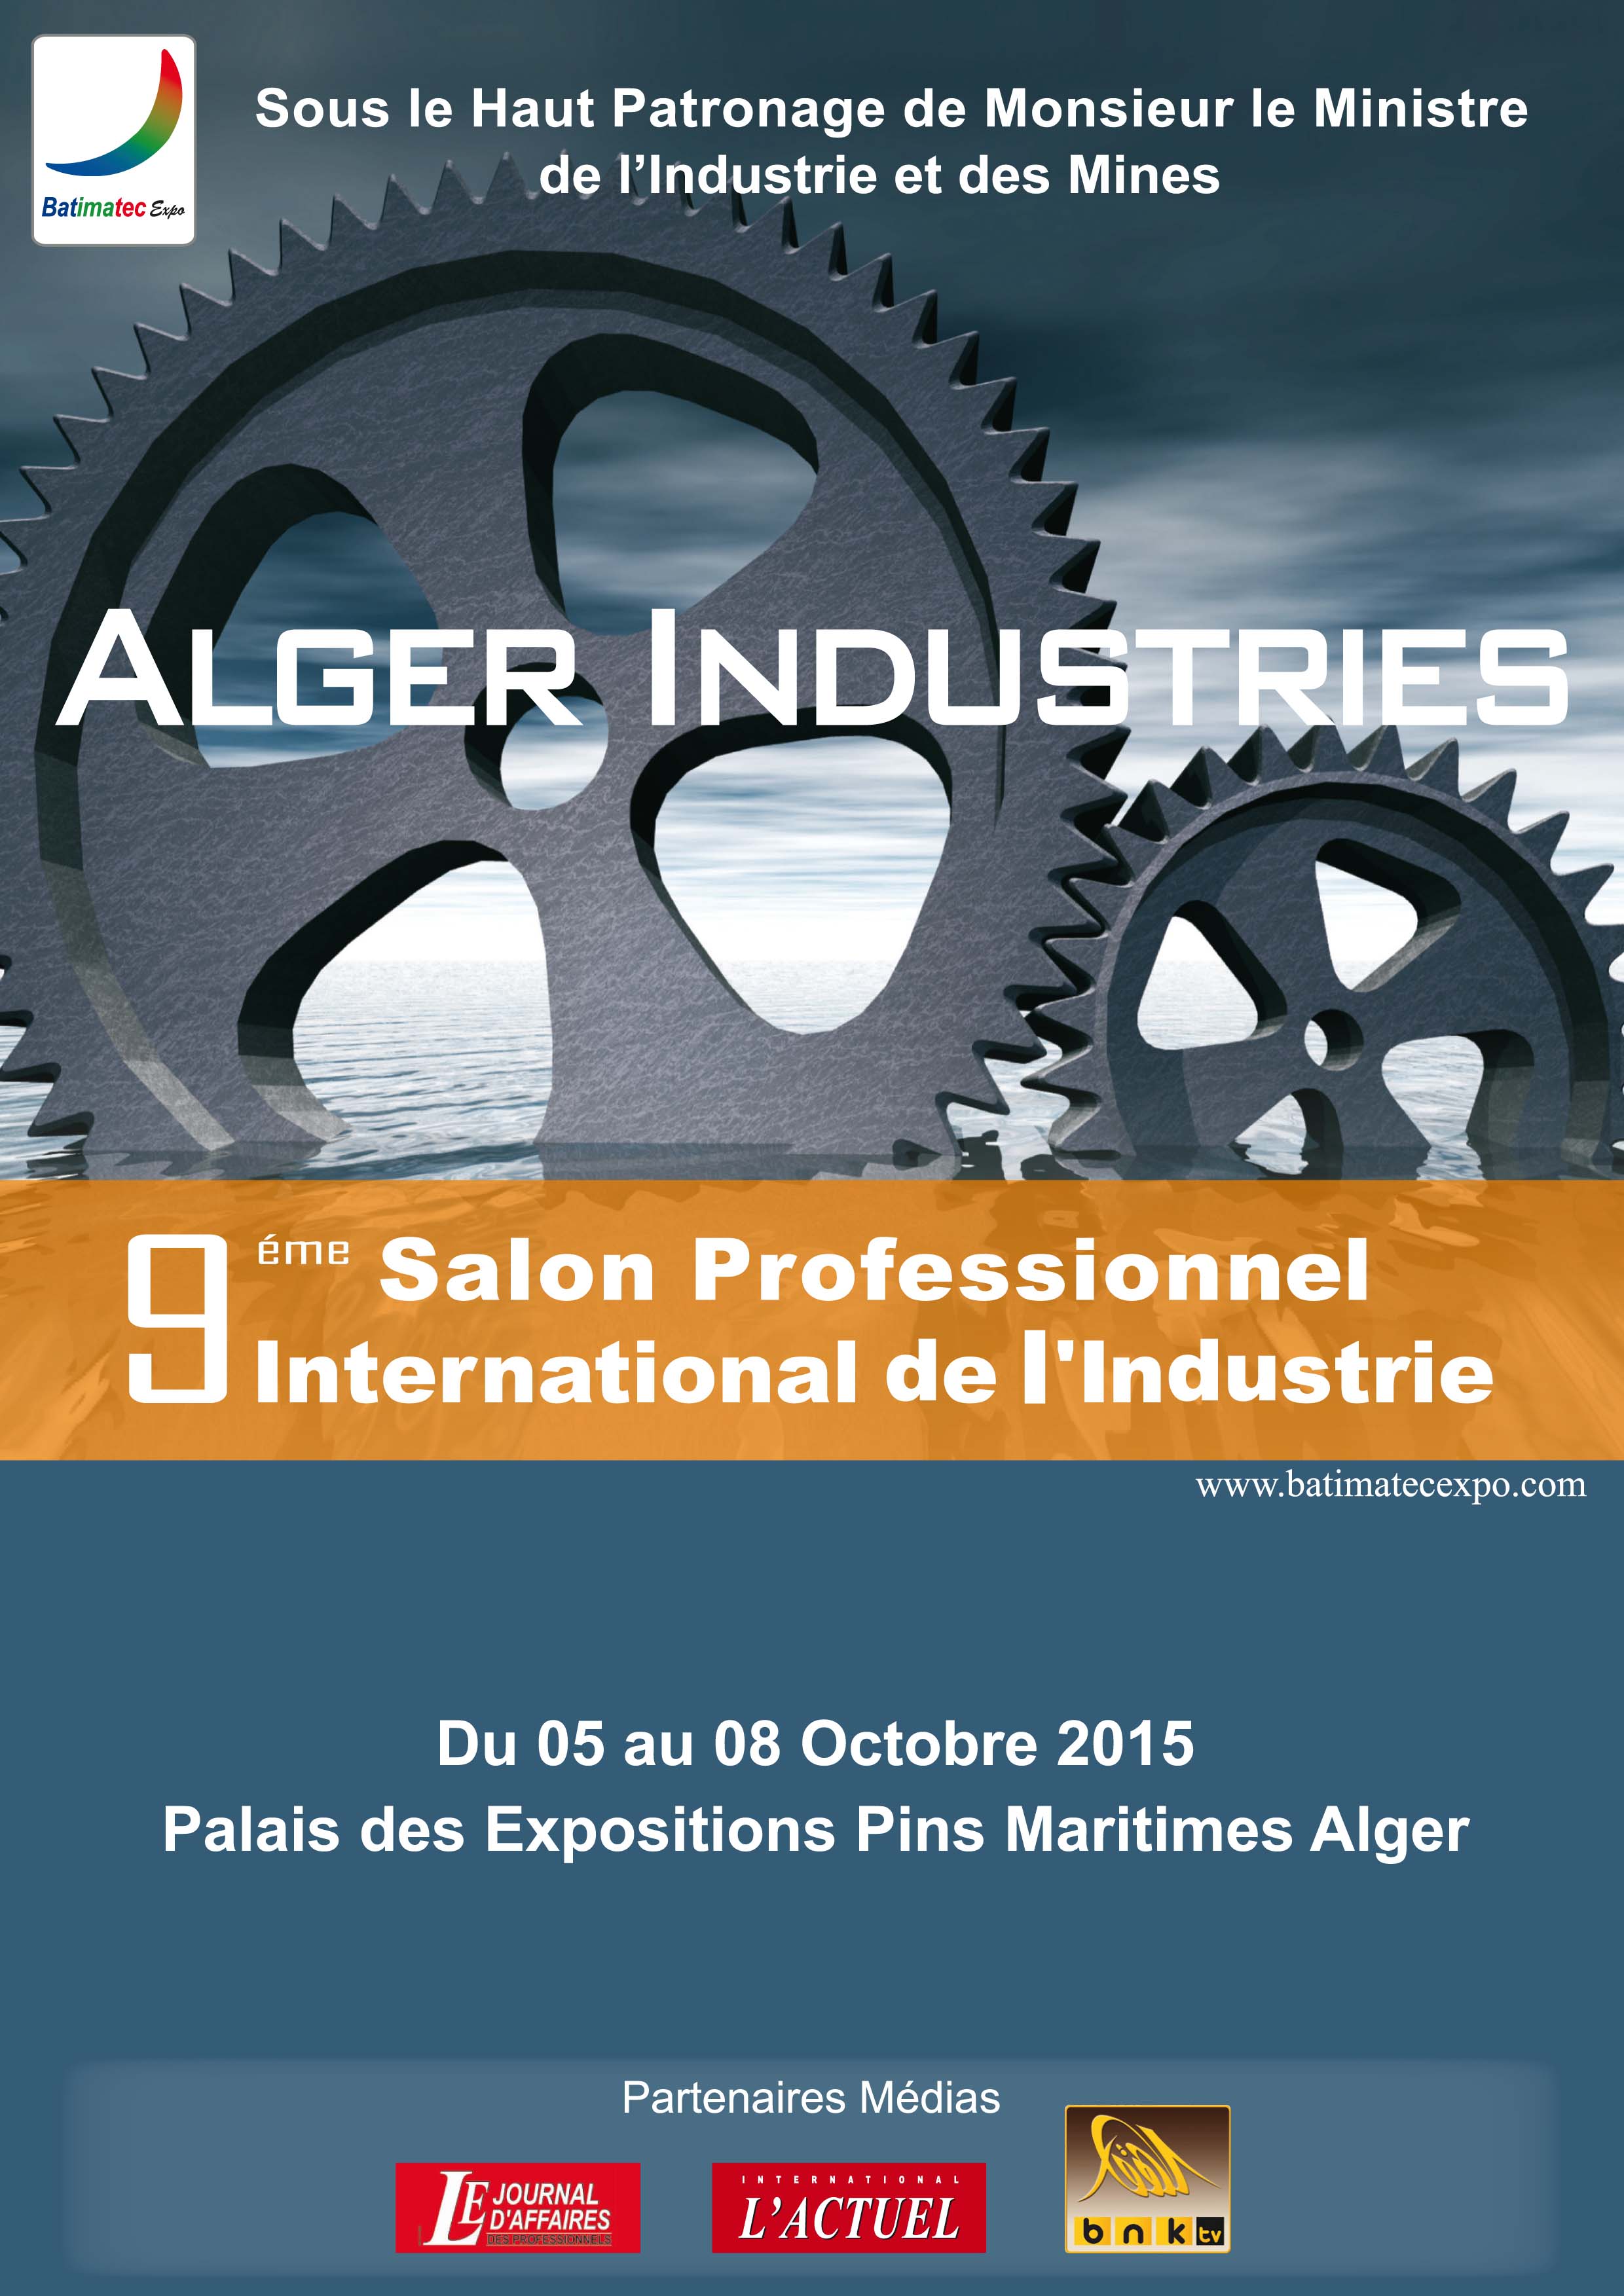 GH CRANES & COMPONENTS no salão da Indústria 2015 em Alger